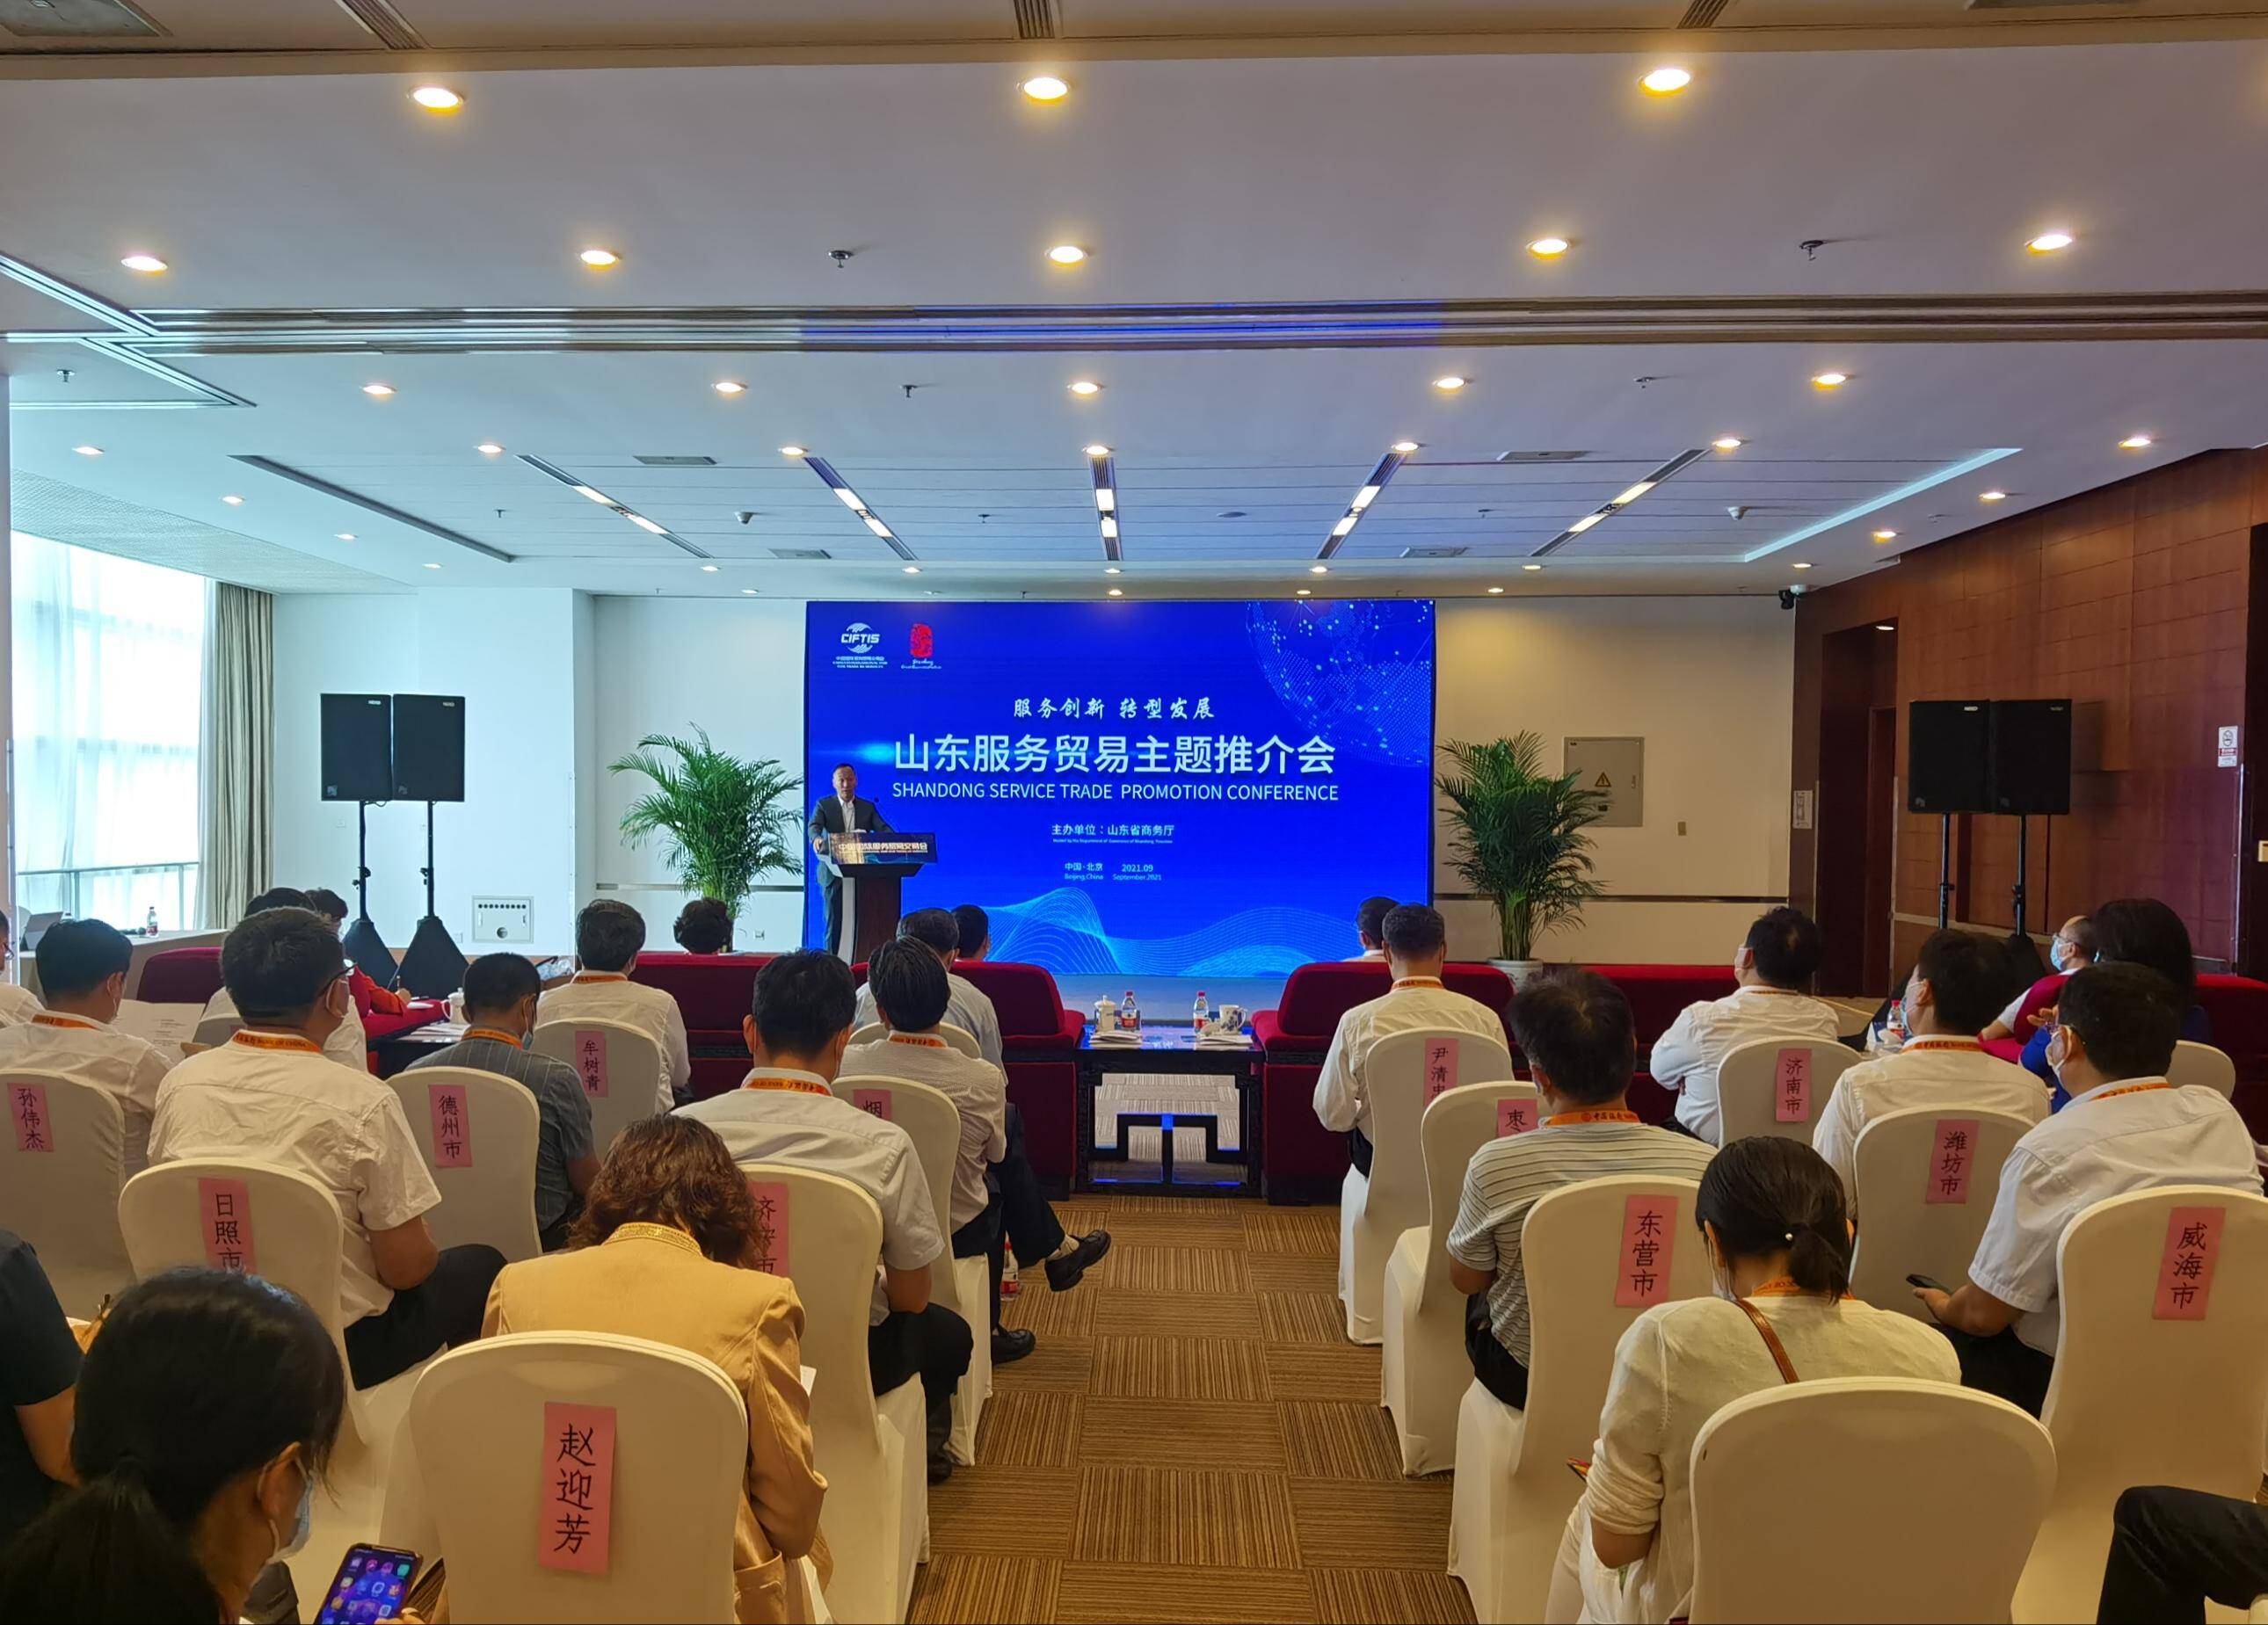 山东服贸企业亮相北京 集中展示服务贸易数字化转型成果